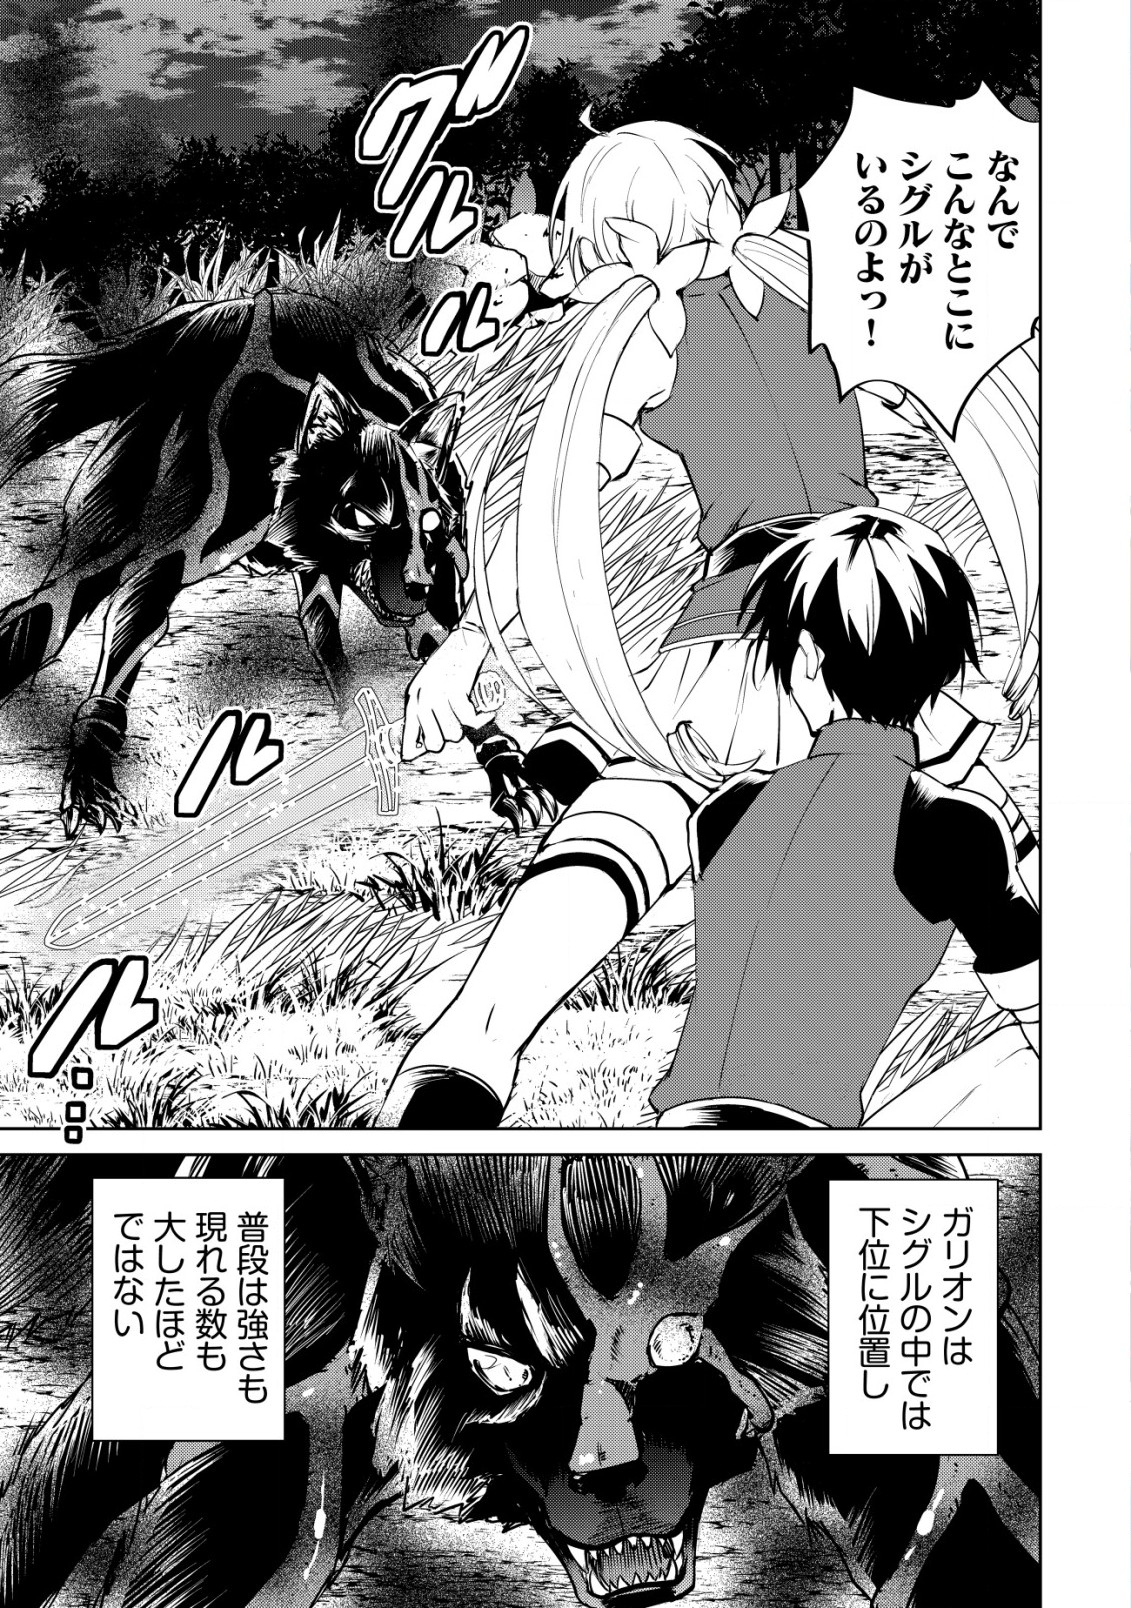 Ten to Chi to Hazama no Sekai Yelatium - Chapter 5.1 - Page 1